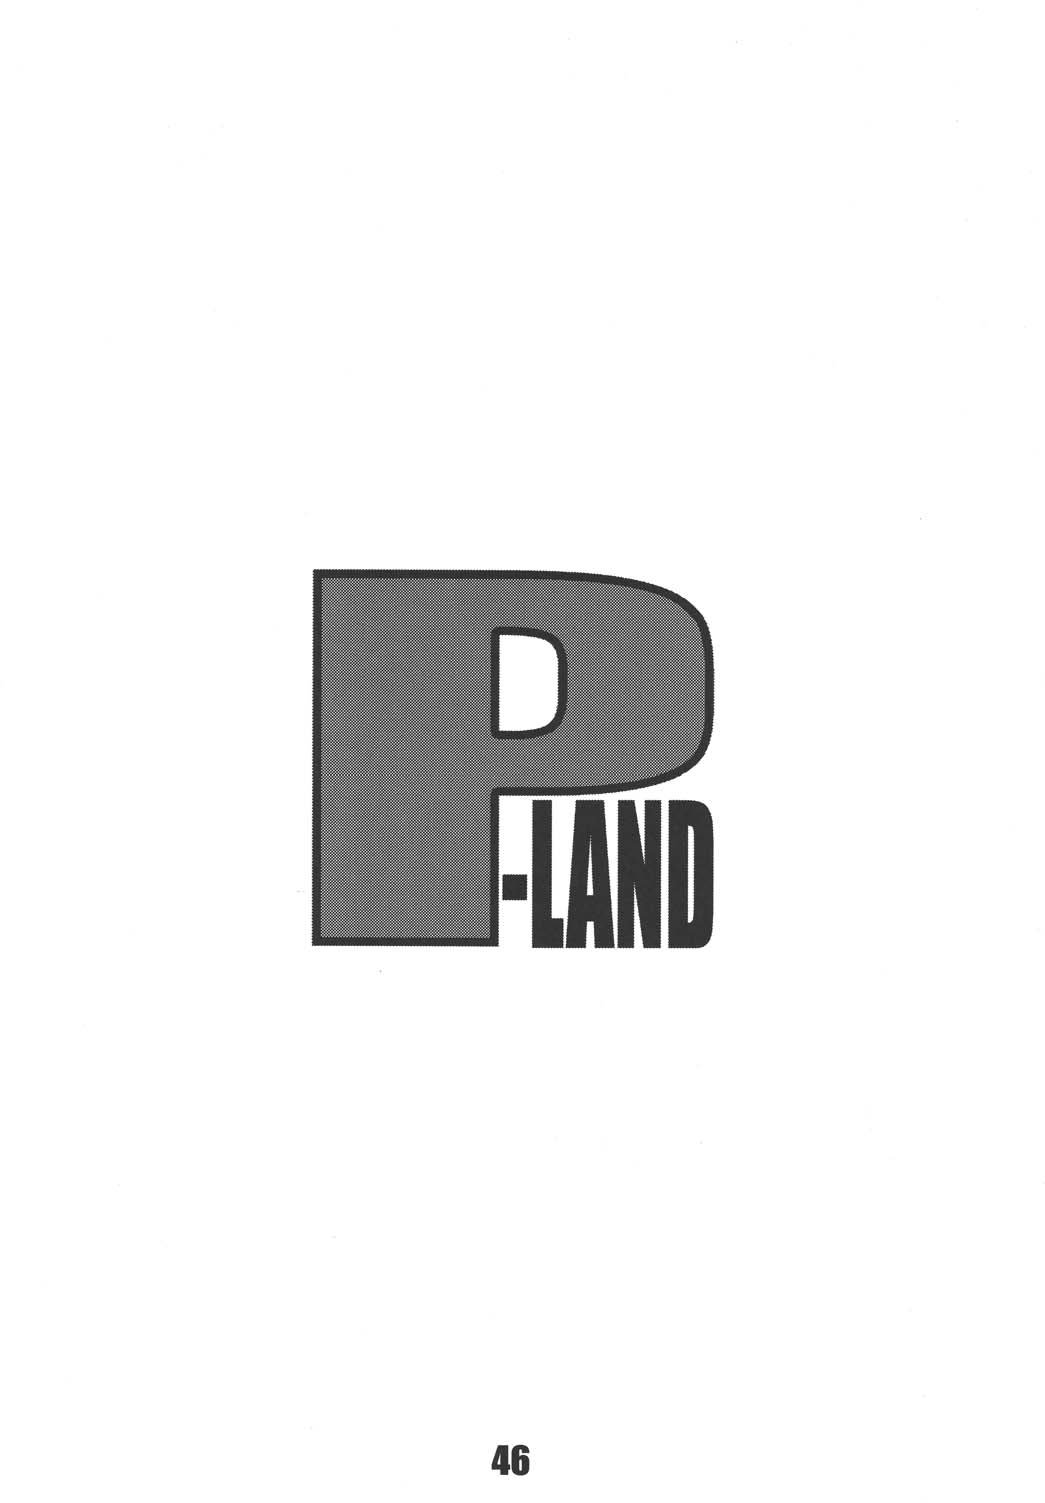 【ポン酢】P-LANDROUND12（おねがい）